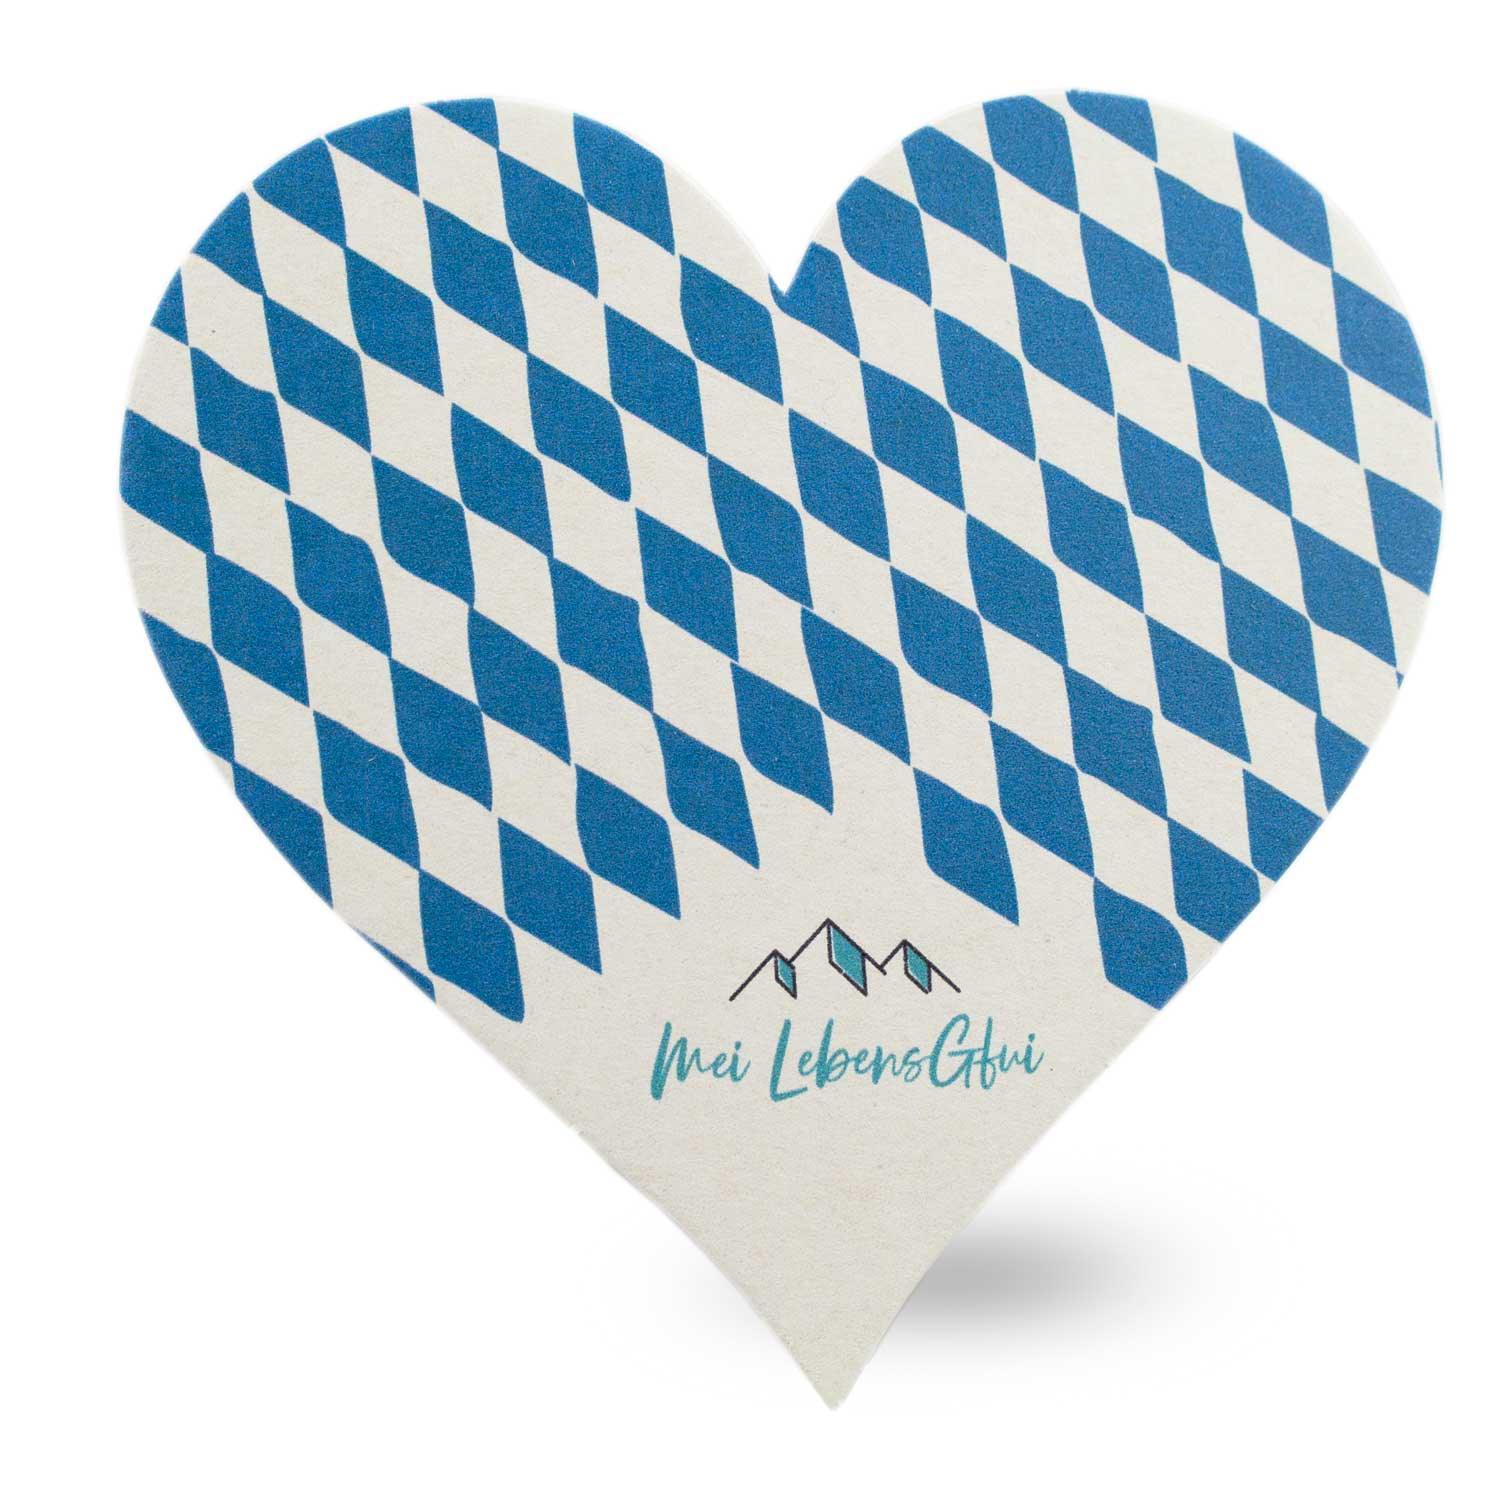 Bierfuizl-Herz mit weiß-blauen Rauten - bavariashop - mei LebensGfui